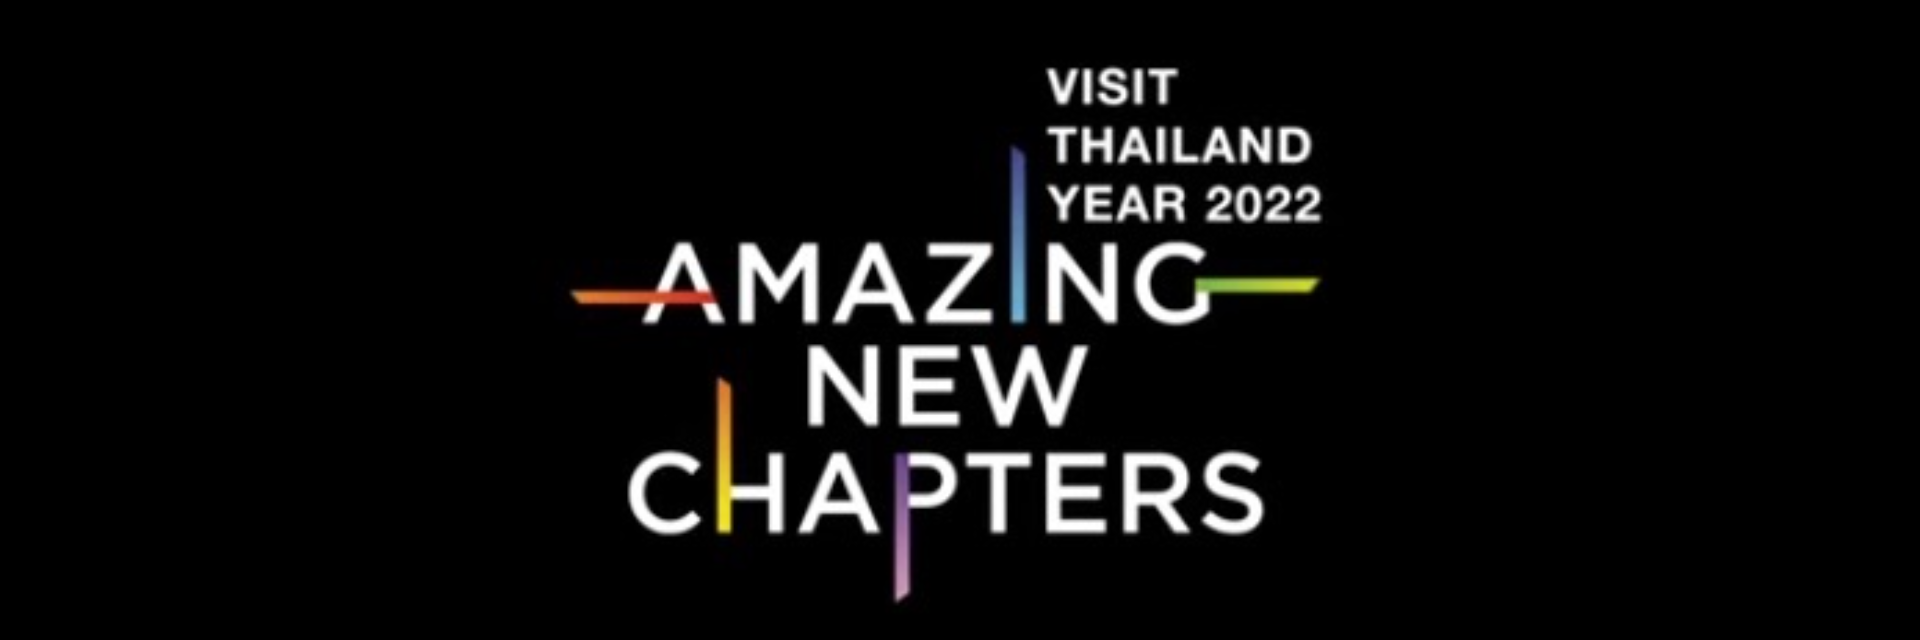 Amazing Thailand, Amazing New Chapters.